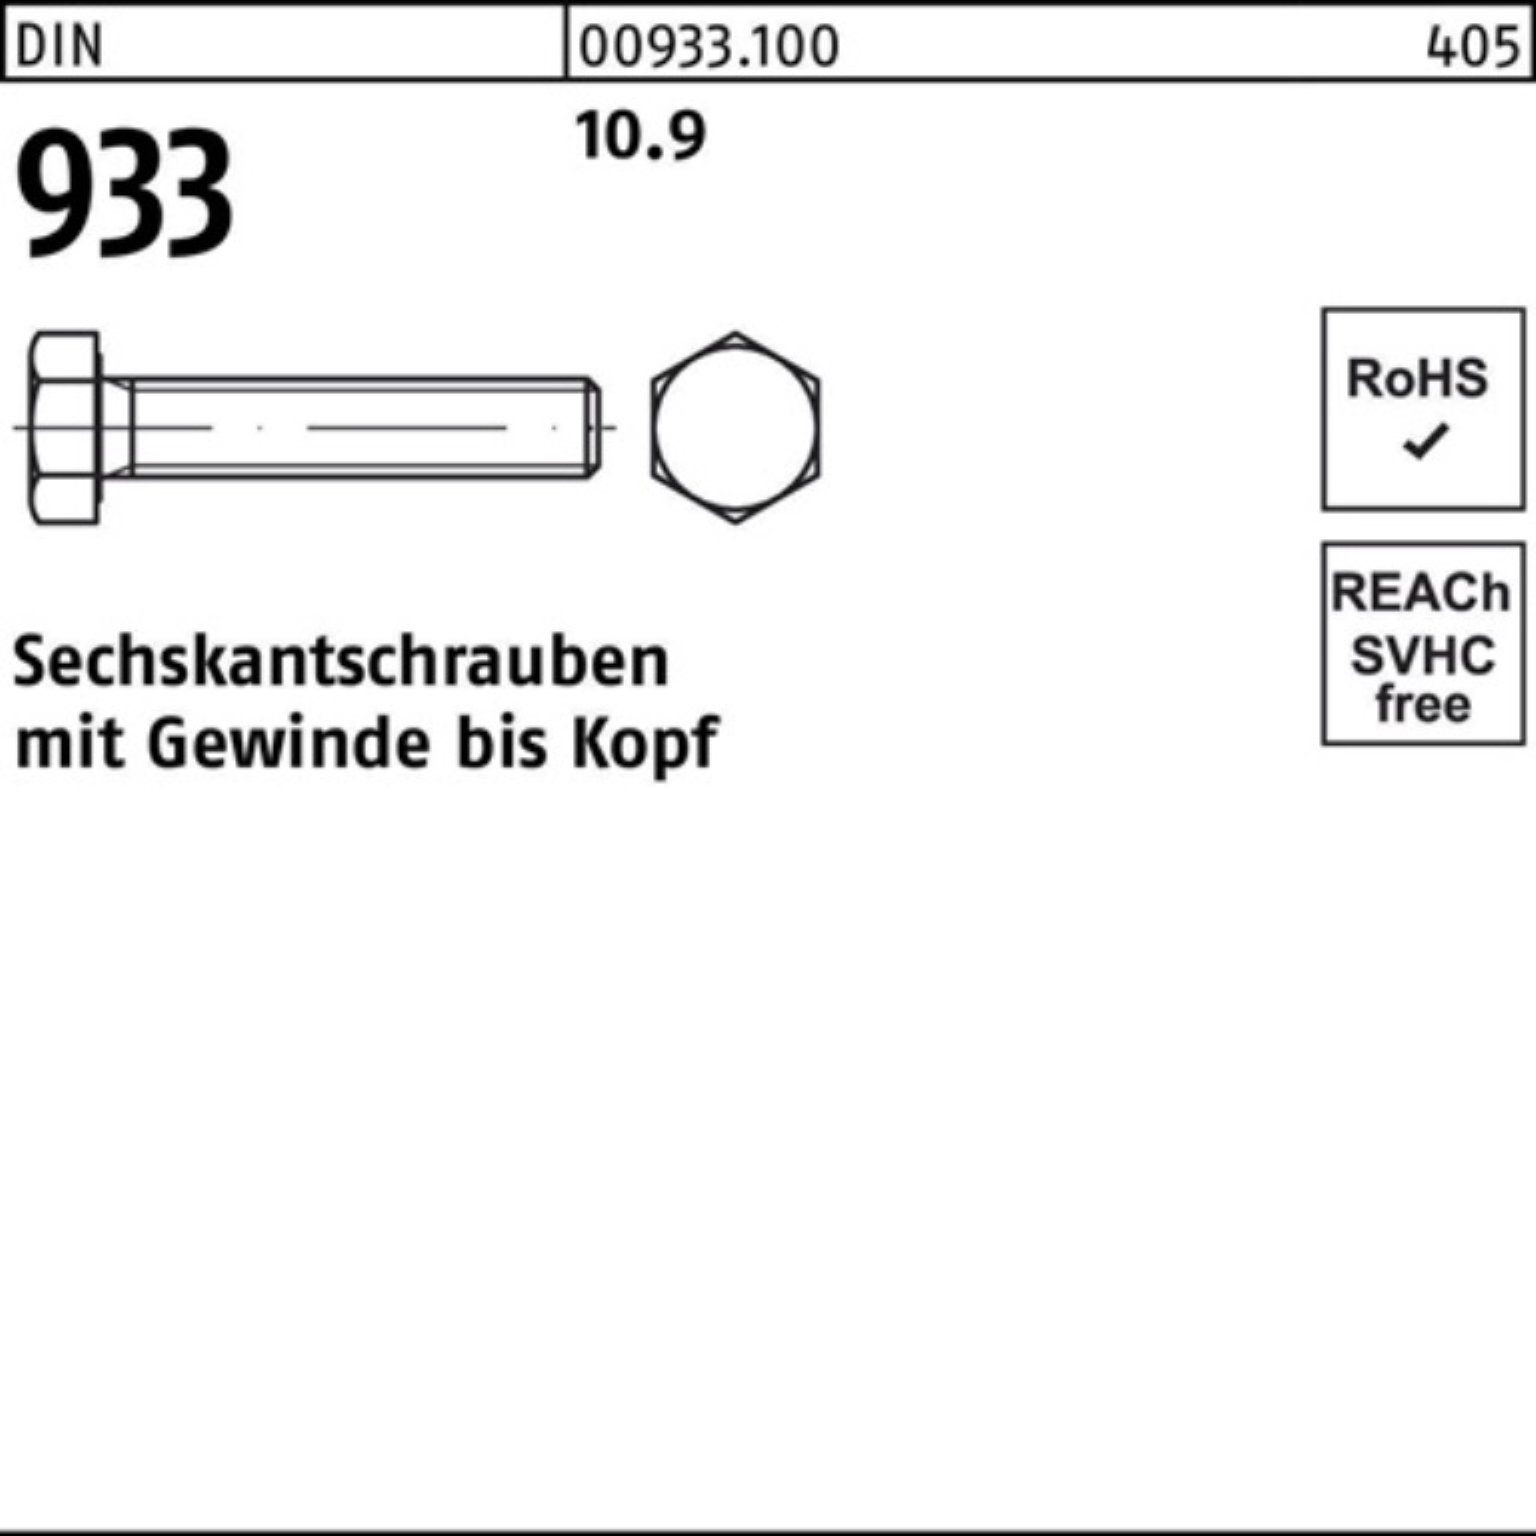 Reyher Sechskantschraube 100er 90 10.9 DIN DIN Stück M36x VG Sechskantschraube 1 933 933 Pack